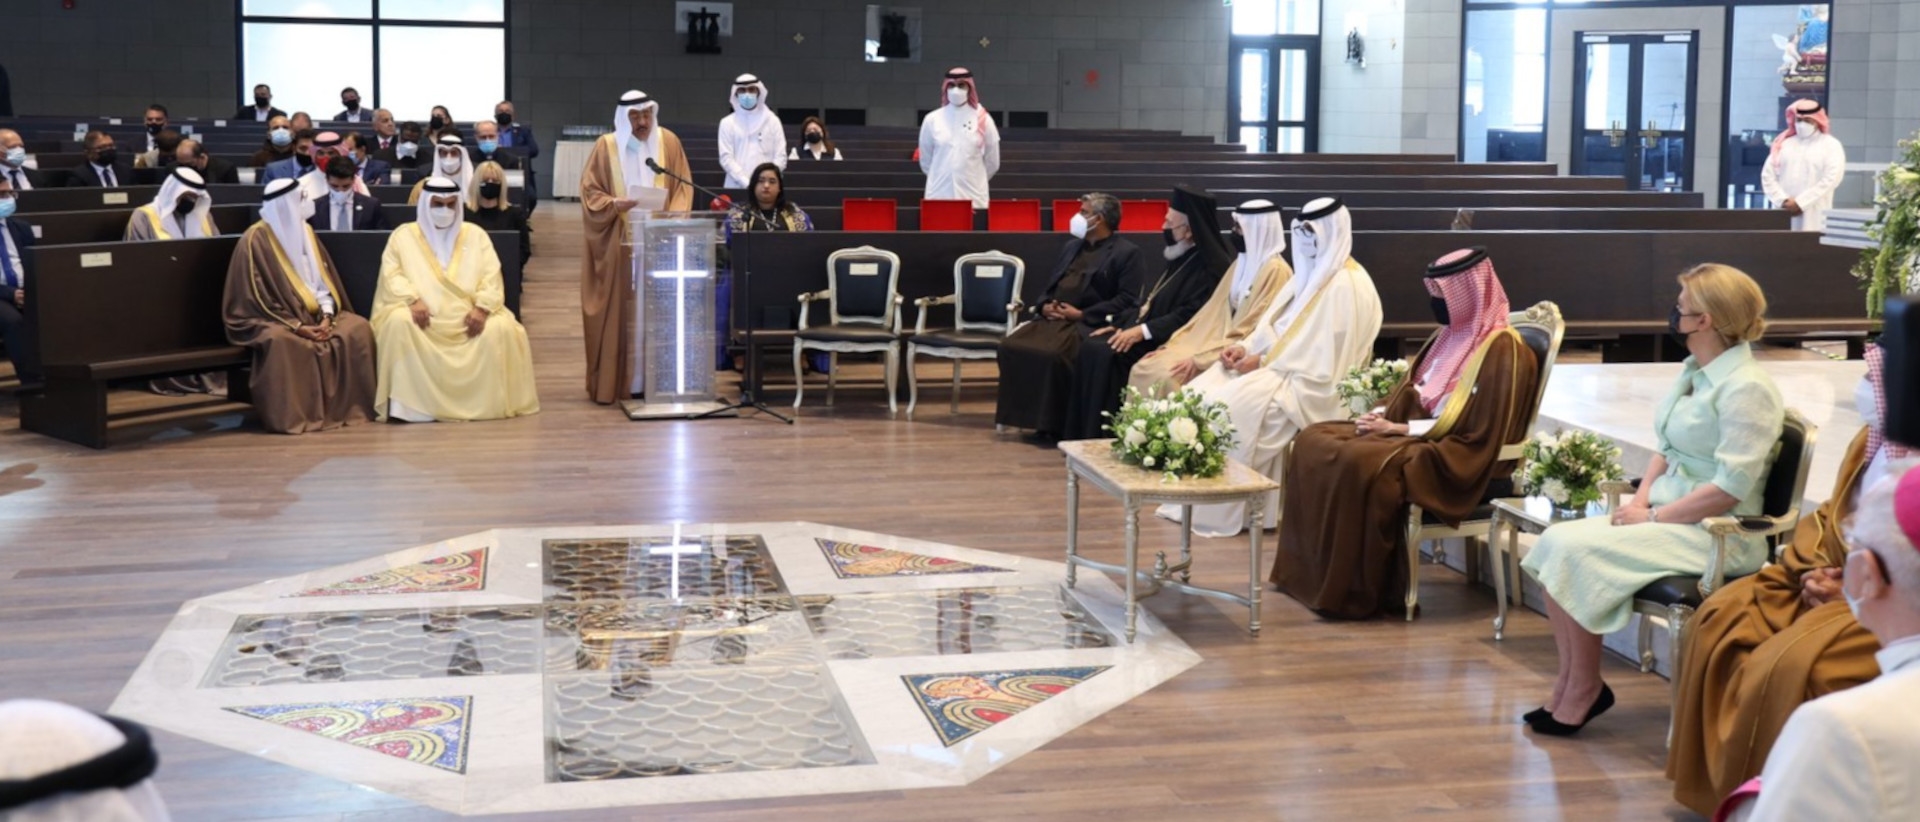 Inauguration de la cathédrale catholique Notre-Dame d'Arabie à Bahreïn, le 9 décembre 2021 | DR